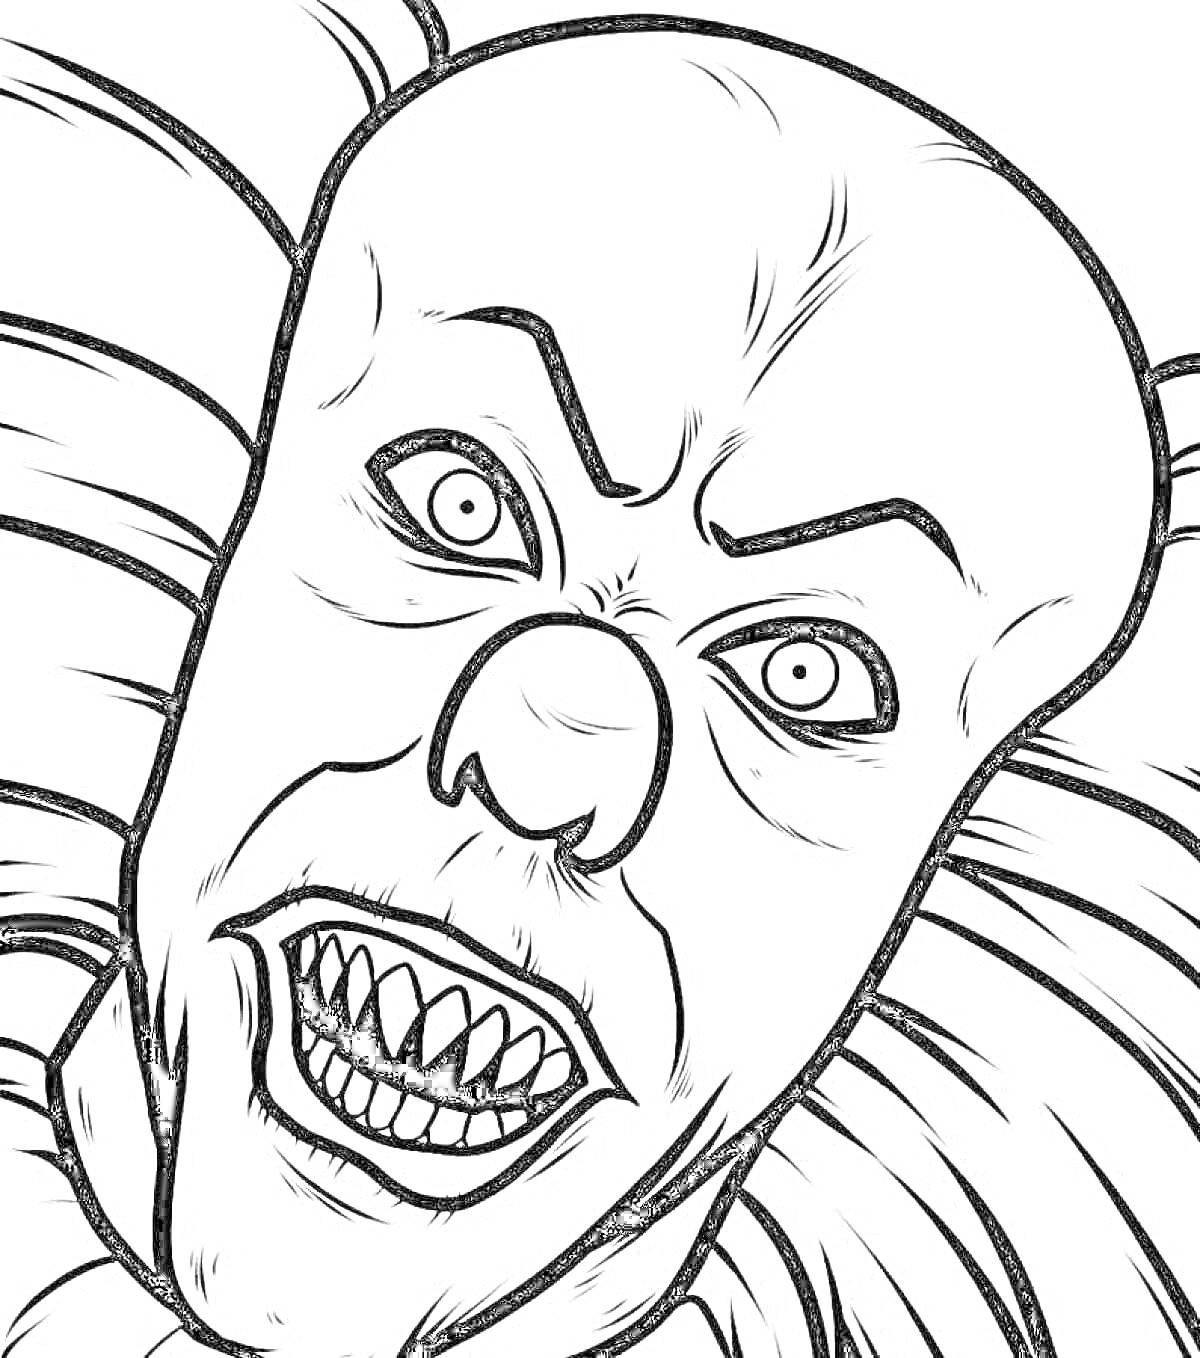 Раскраска лицо жуткого клоуна с острыми зубами и выпученными глазами, окружённое воротником с рюшами